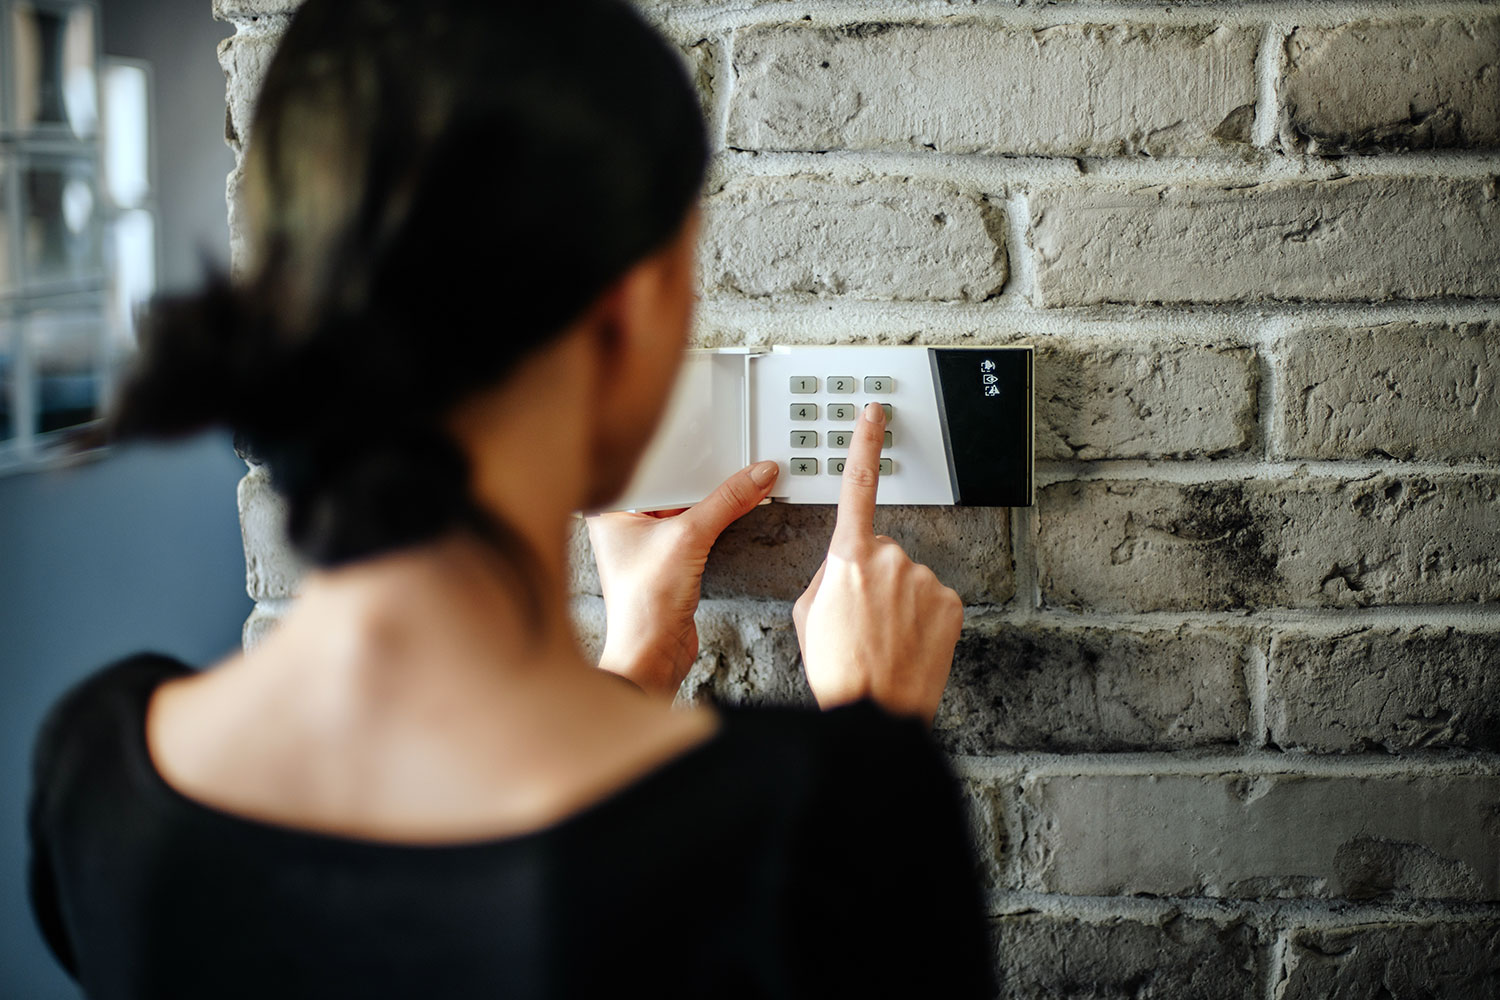 Una mujer introduce el pin de seguridad en el teclado del sistema de alarma de su vivienda